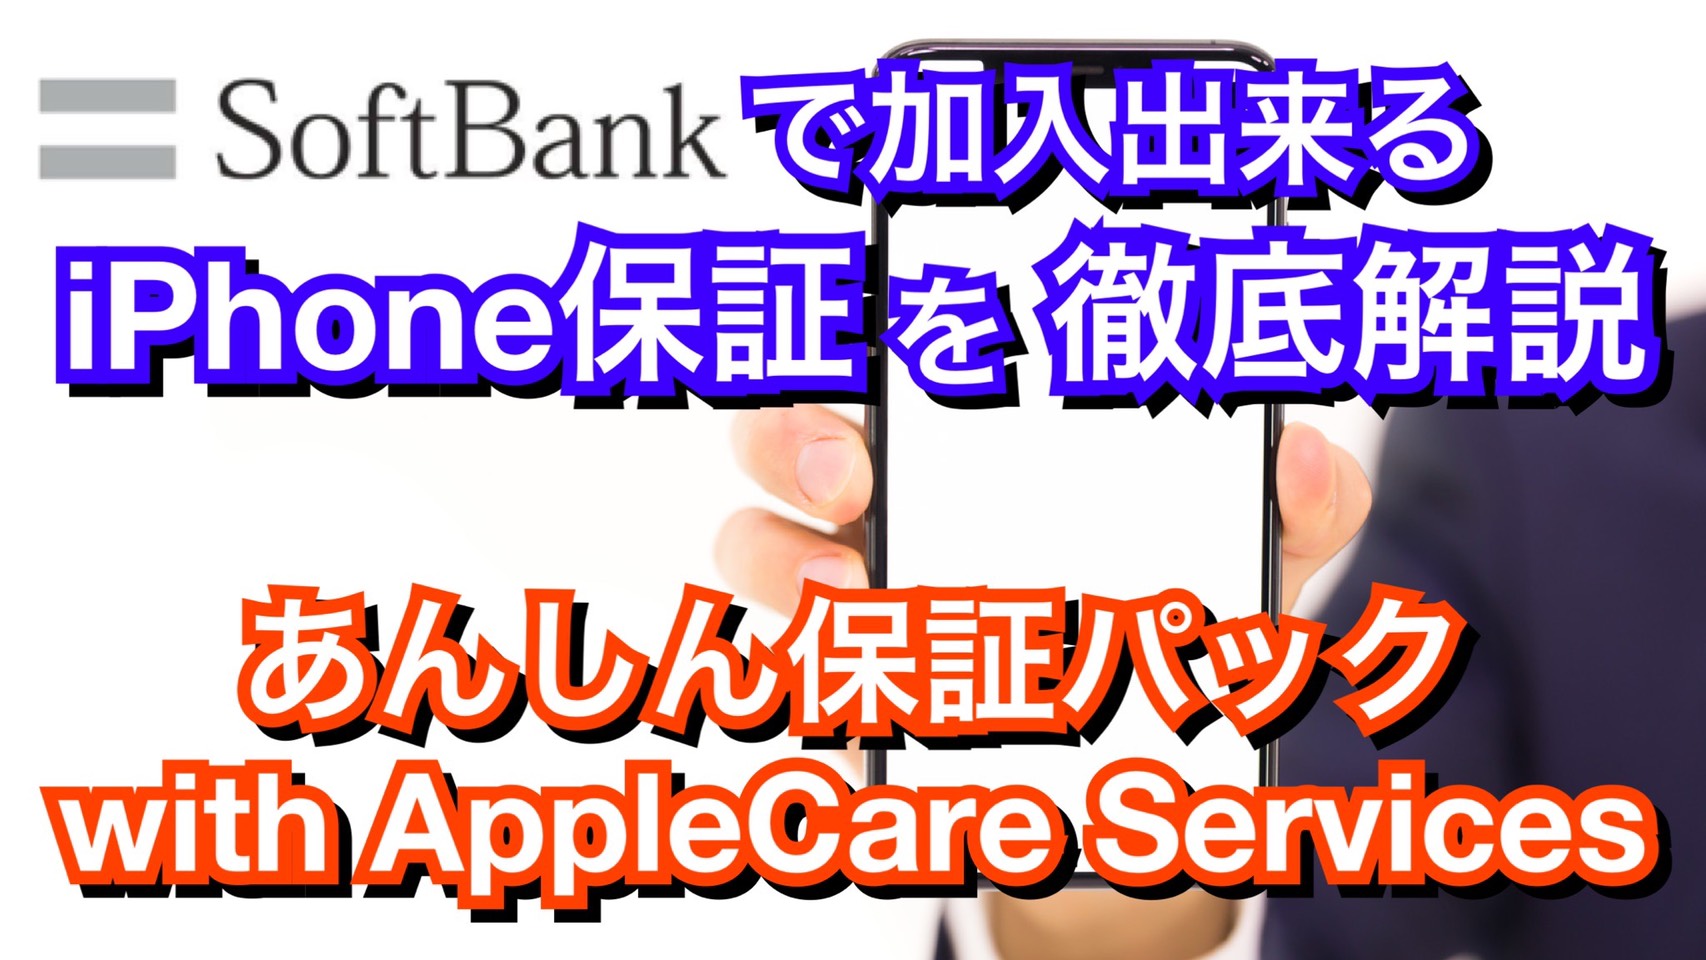 解説 Softbankのiphone保証 あんしん保証パック With Applecare Services を徹底解説 Iphone修理ならスマホバスター